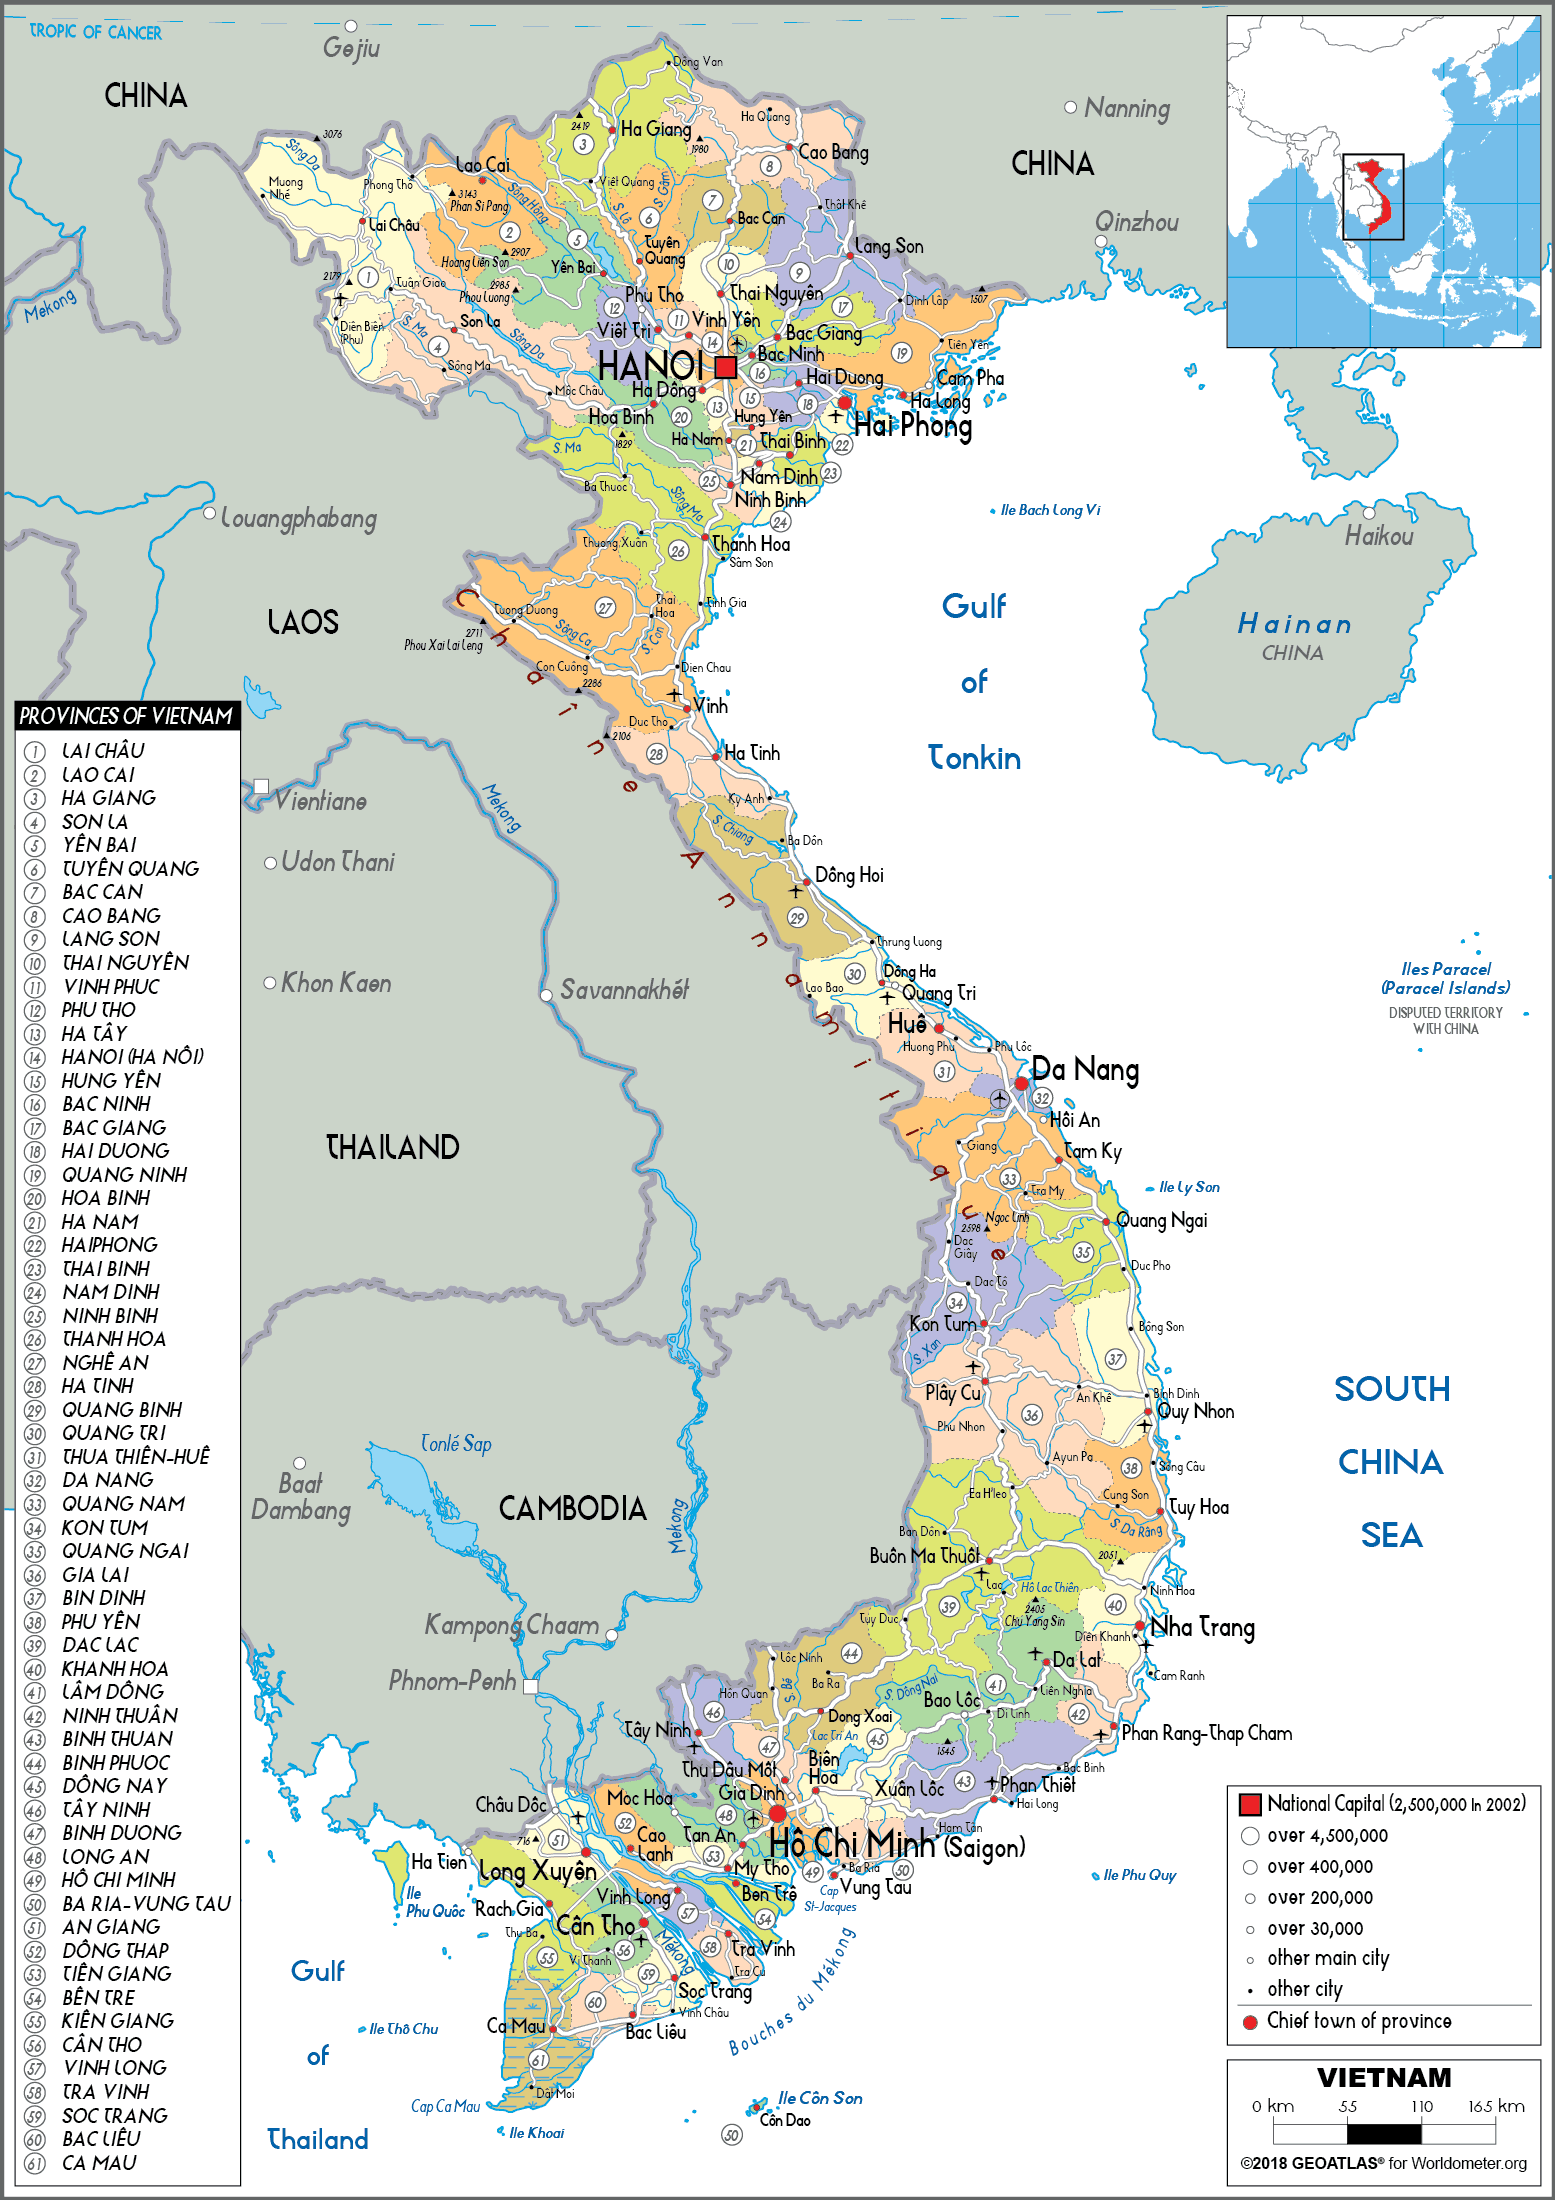 Bản đồ 63 tỉnh thành Việt Nam